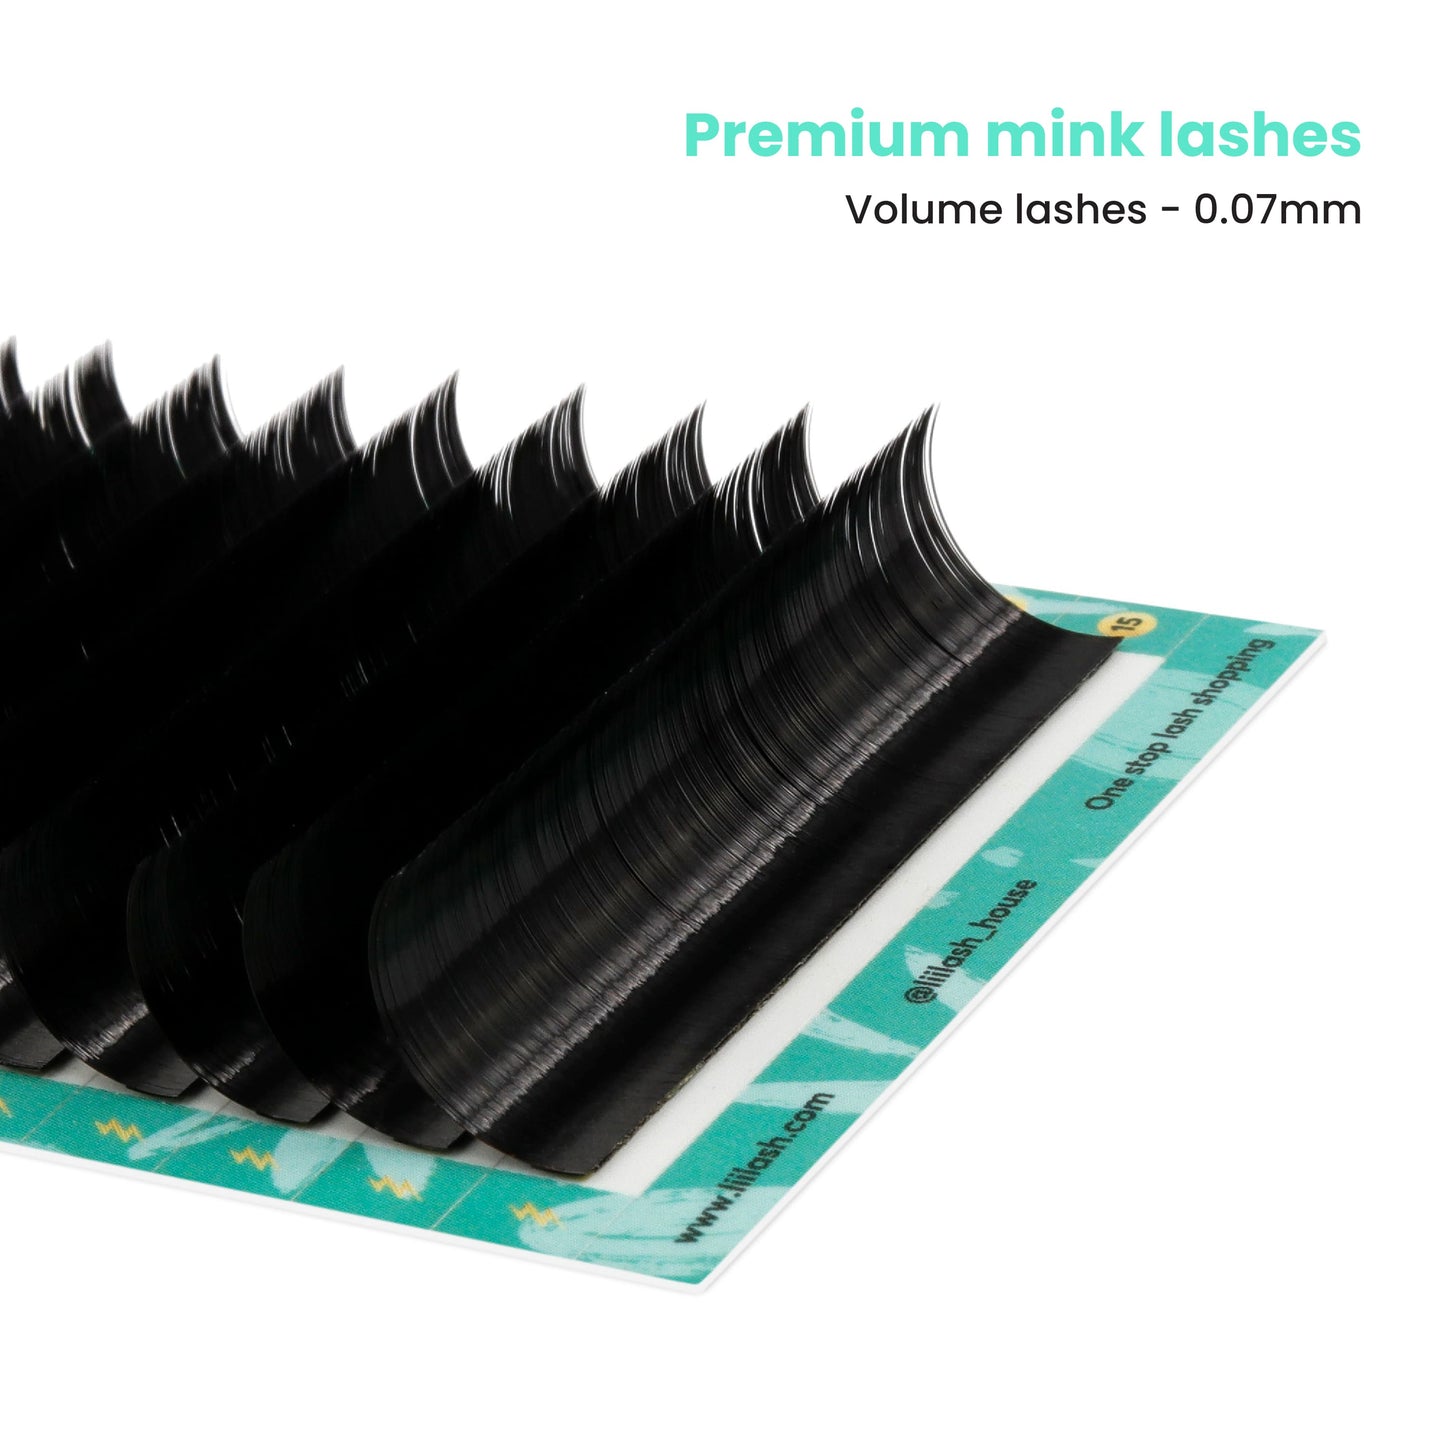 Premium-Mink-volume-lashes-0.07mm